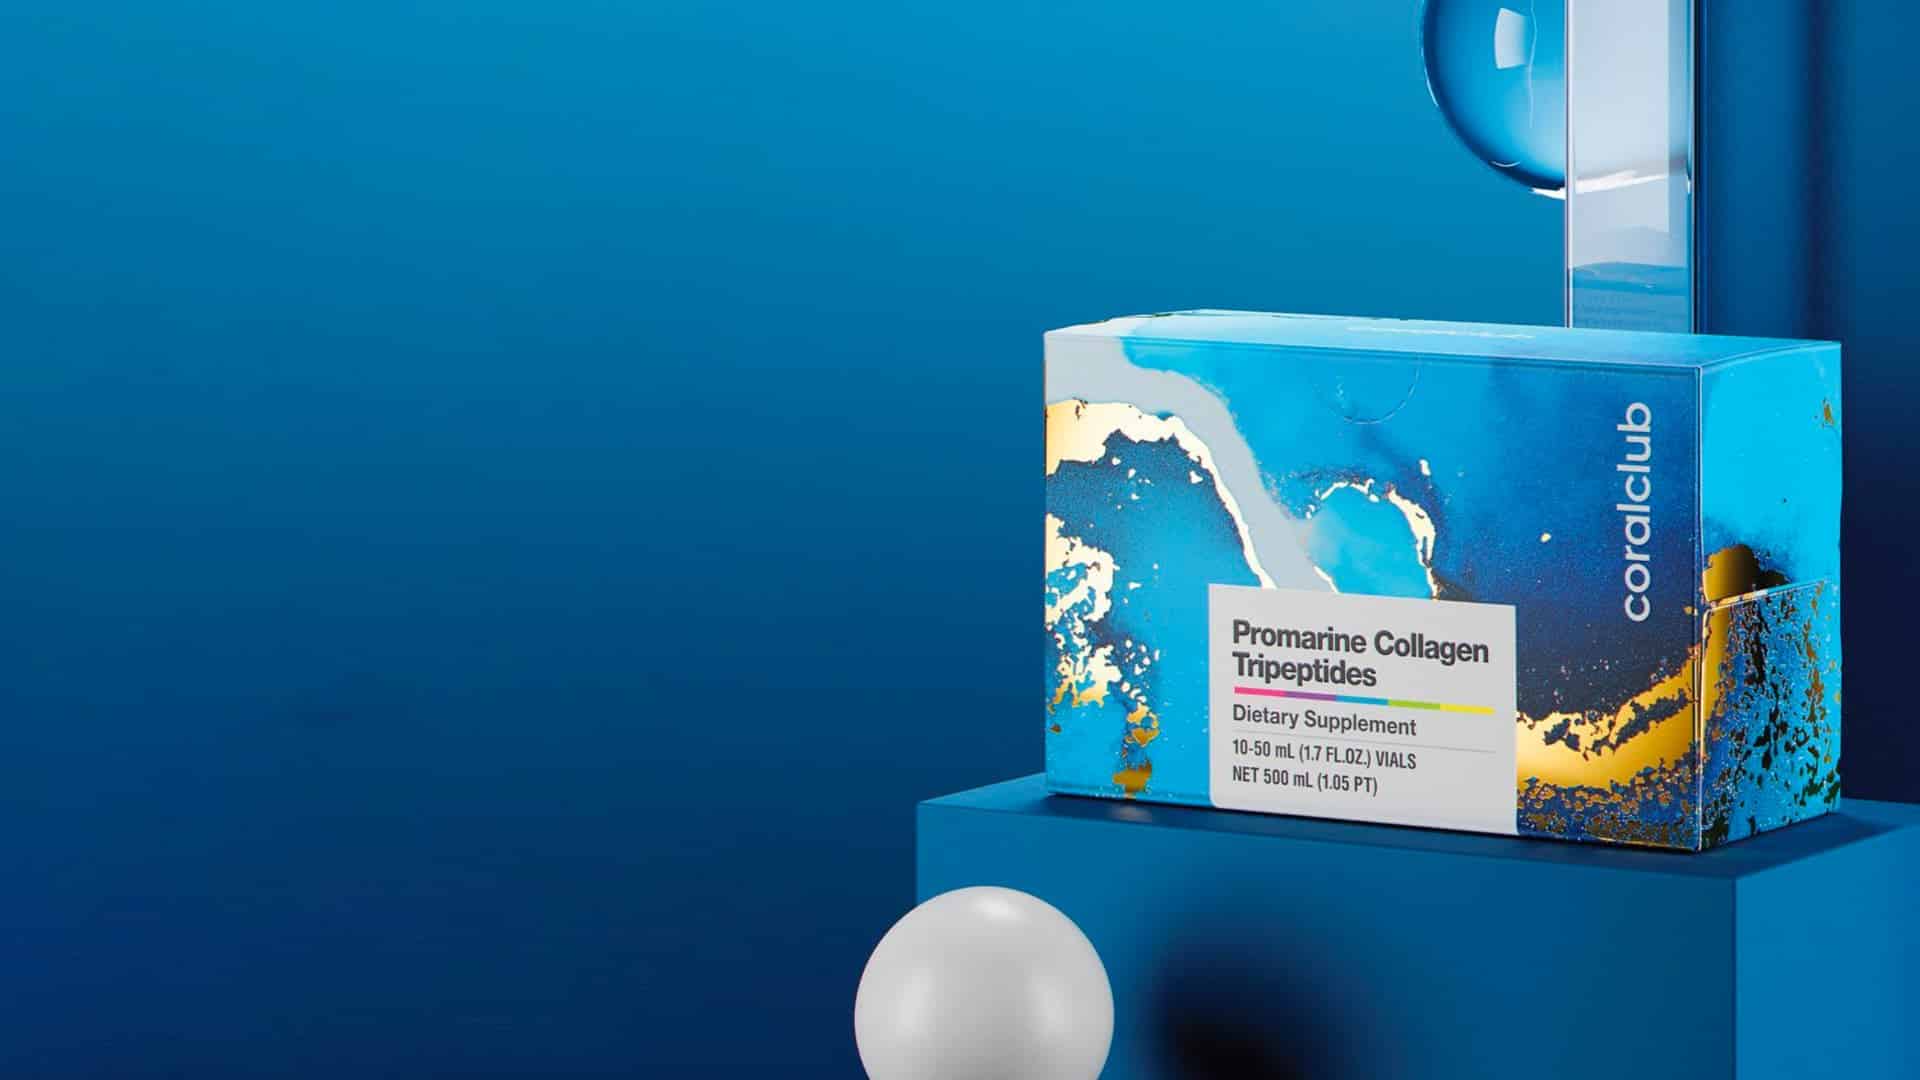 Promarine Collagen Tripeptides